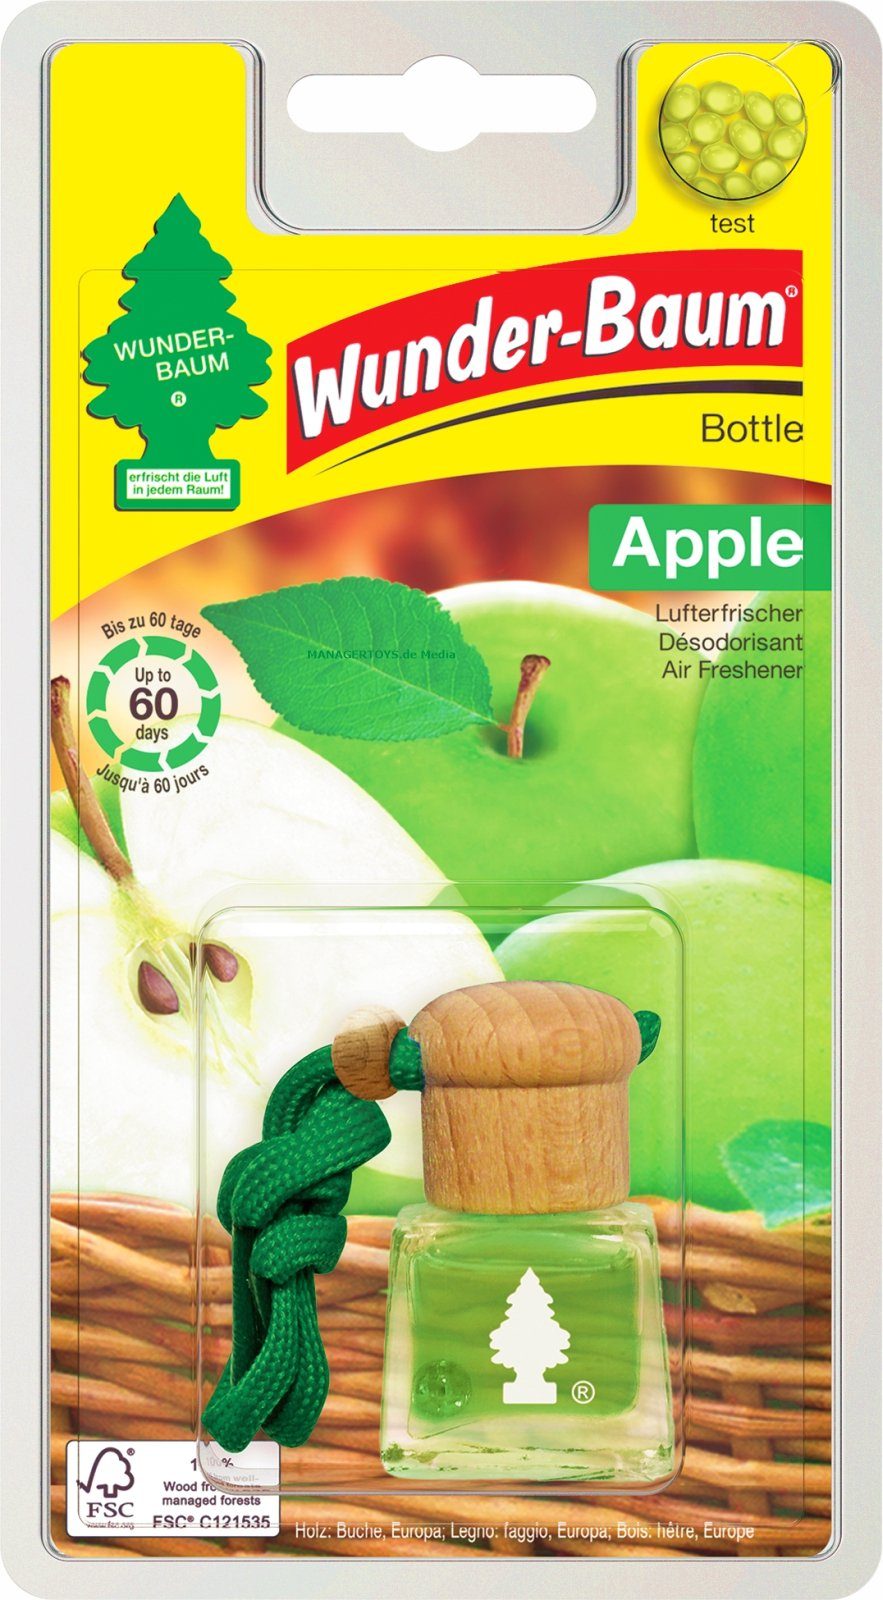 Wunder-Baum Duft-Set Duft 4,5 Lufterfrischer Flakon ml Apfel Apple WUNDERBAUM Bottle